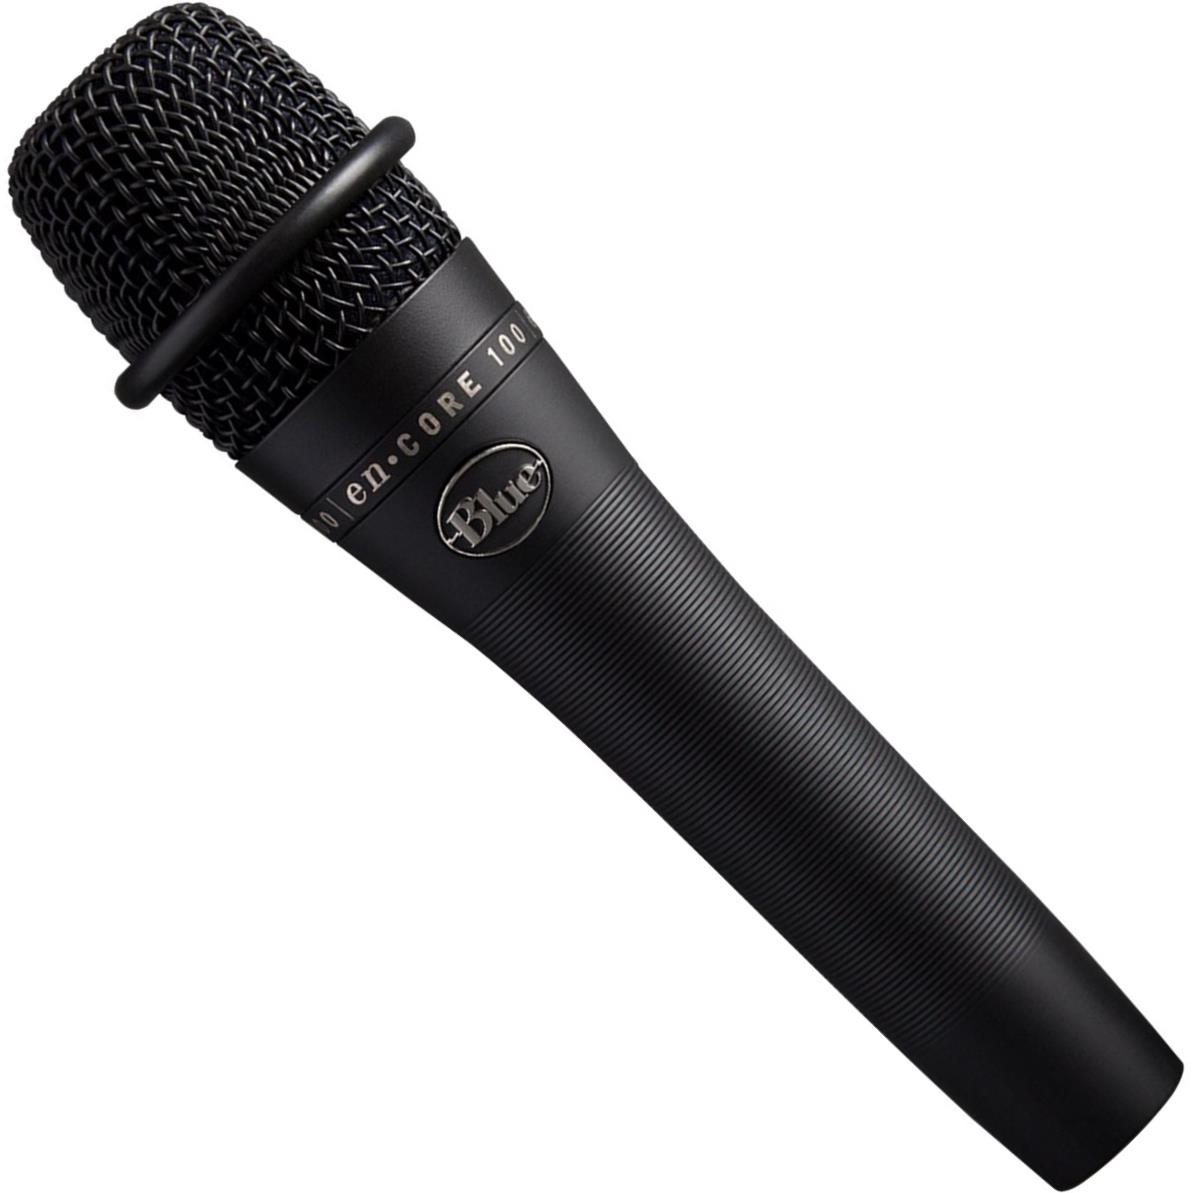 Blue Microphones enCORE 100 Dynamic Handheld Microphone